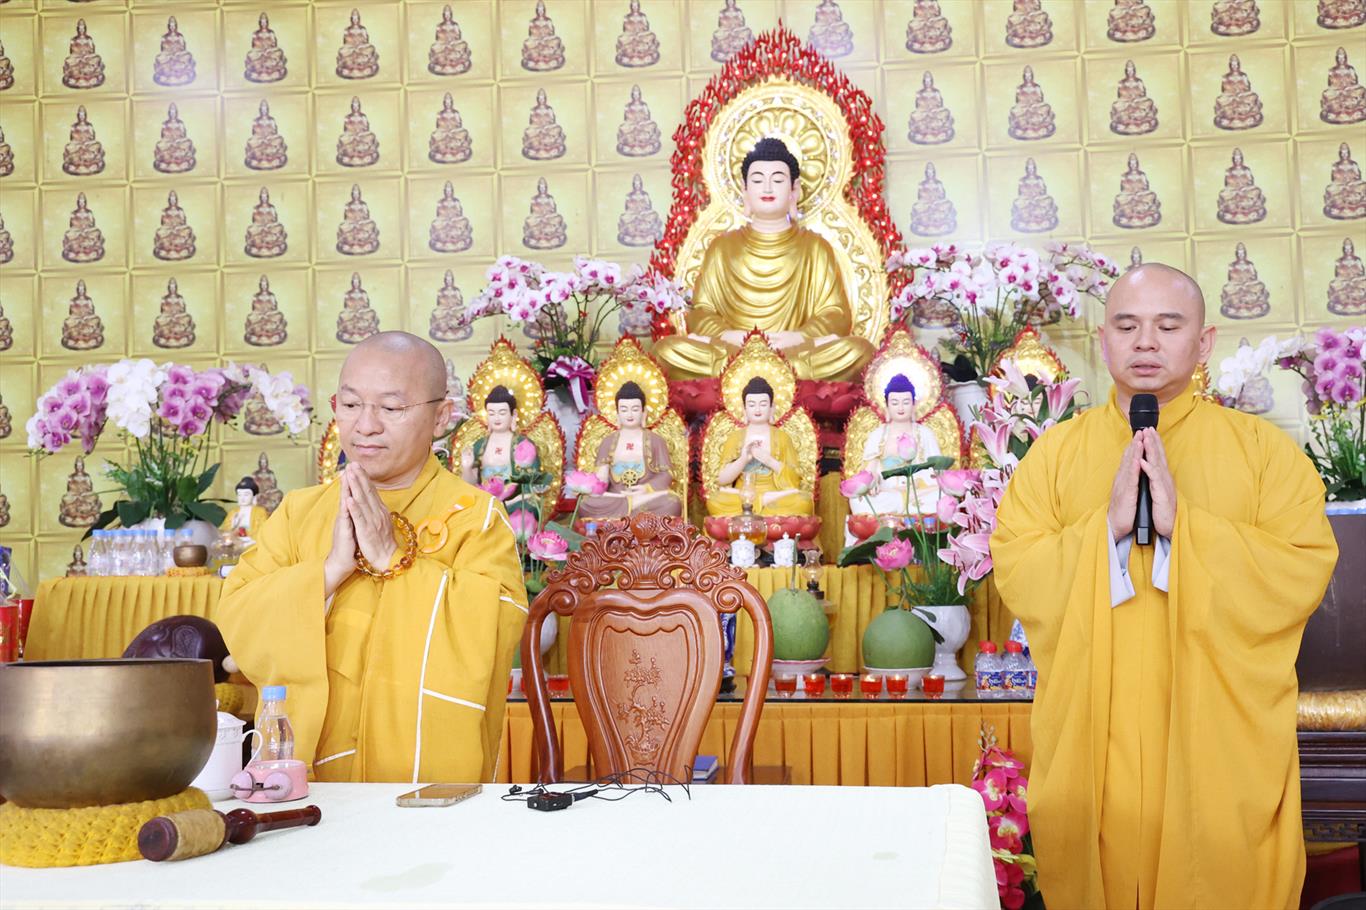 Thượng tọa Thích Nhật Từ thuyết giảng & Quỹ Đạo Phật Ngày Nay cúng dường, tặng từ thiện tại chùa Ân Thọ